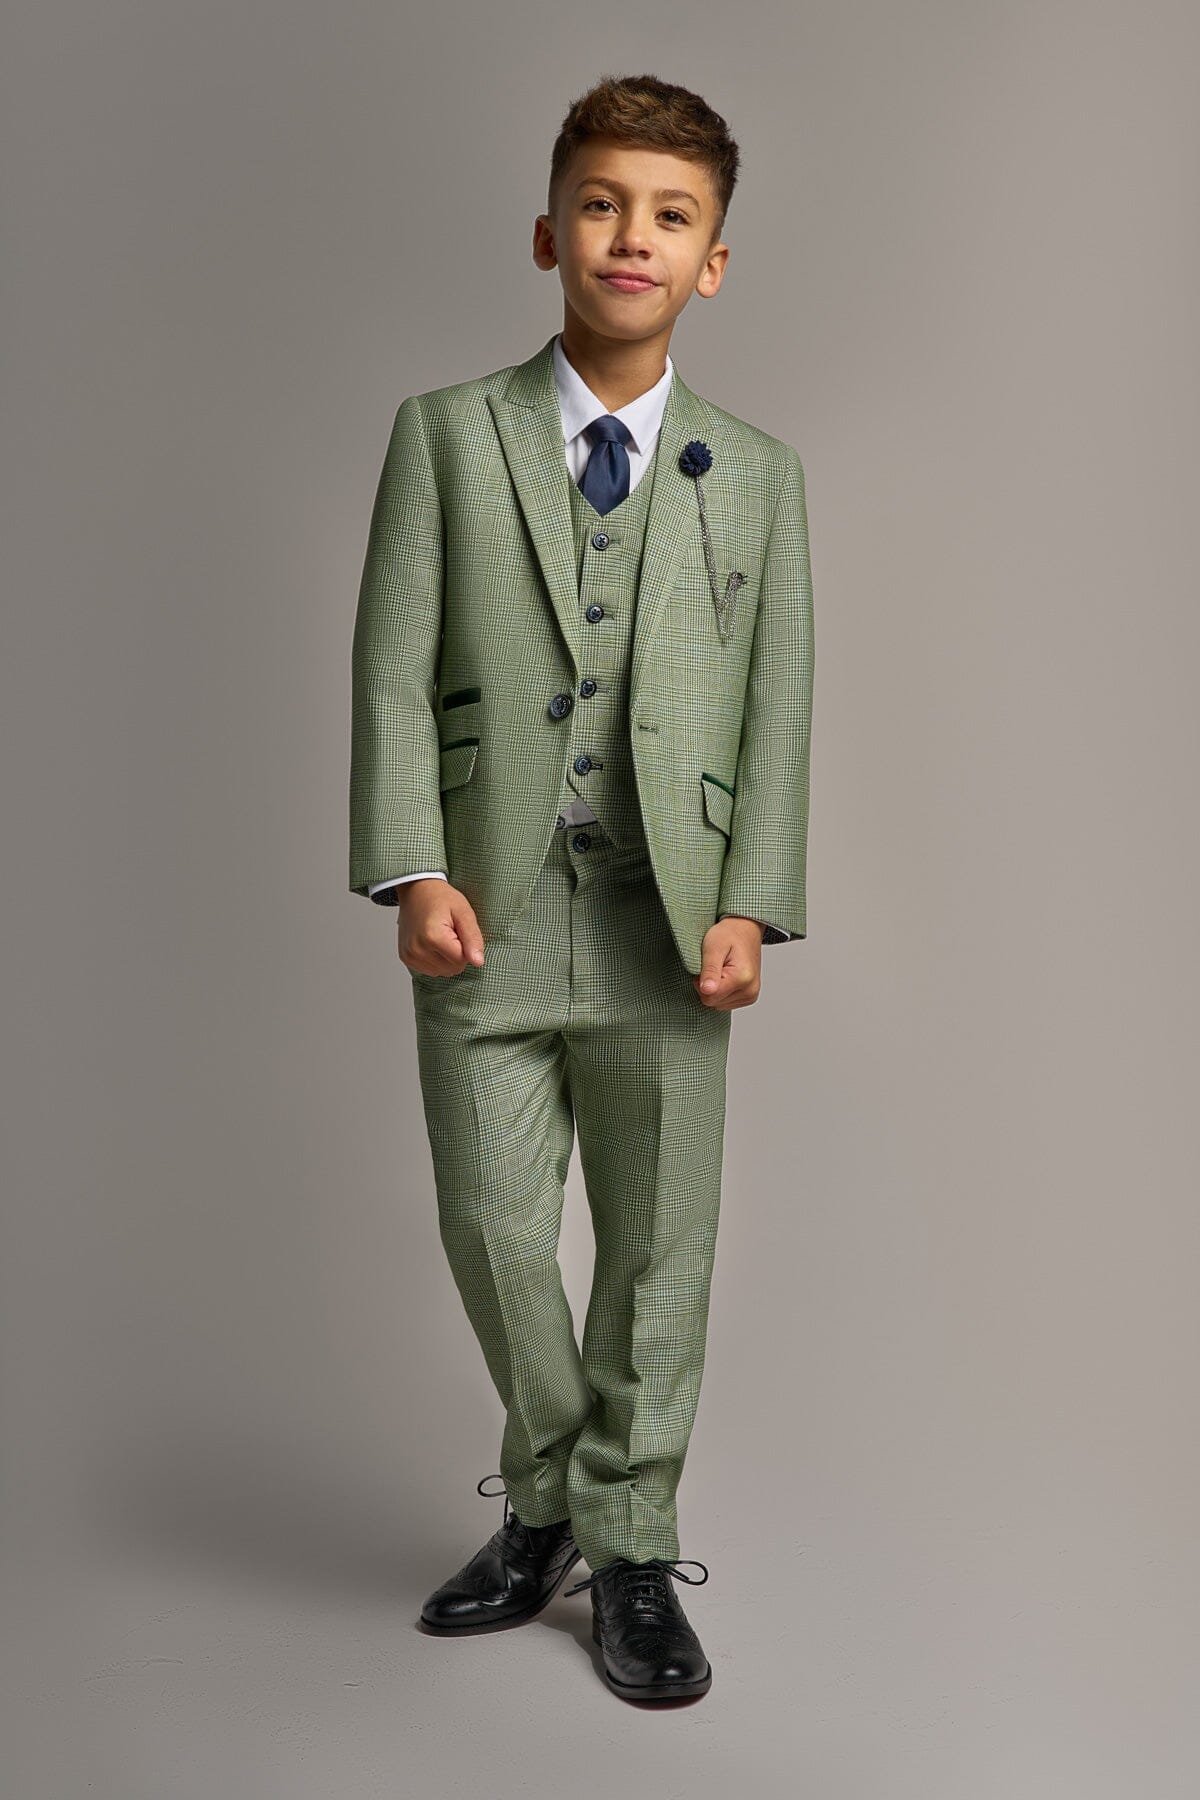 Caridi Sage Boys 3 Piece Suit - Childrenswear - 1 